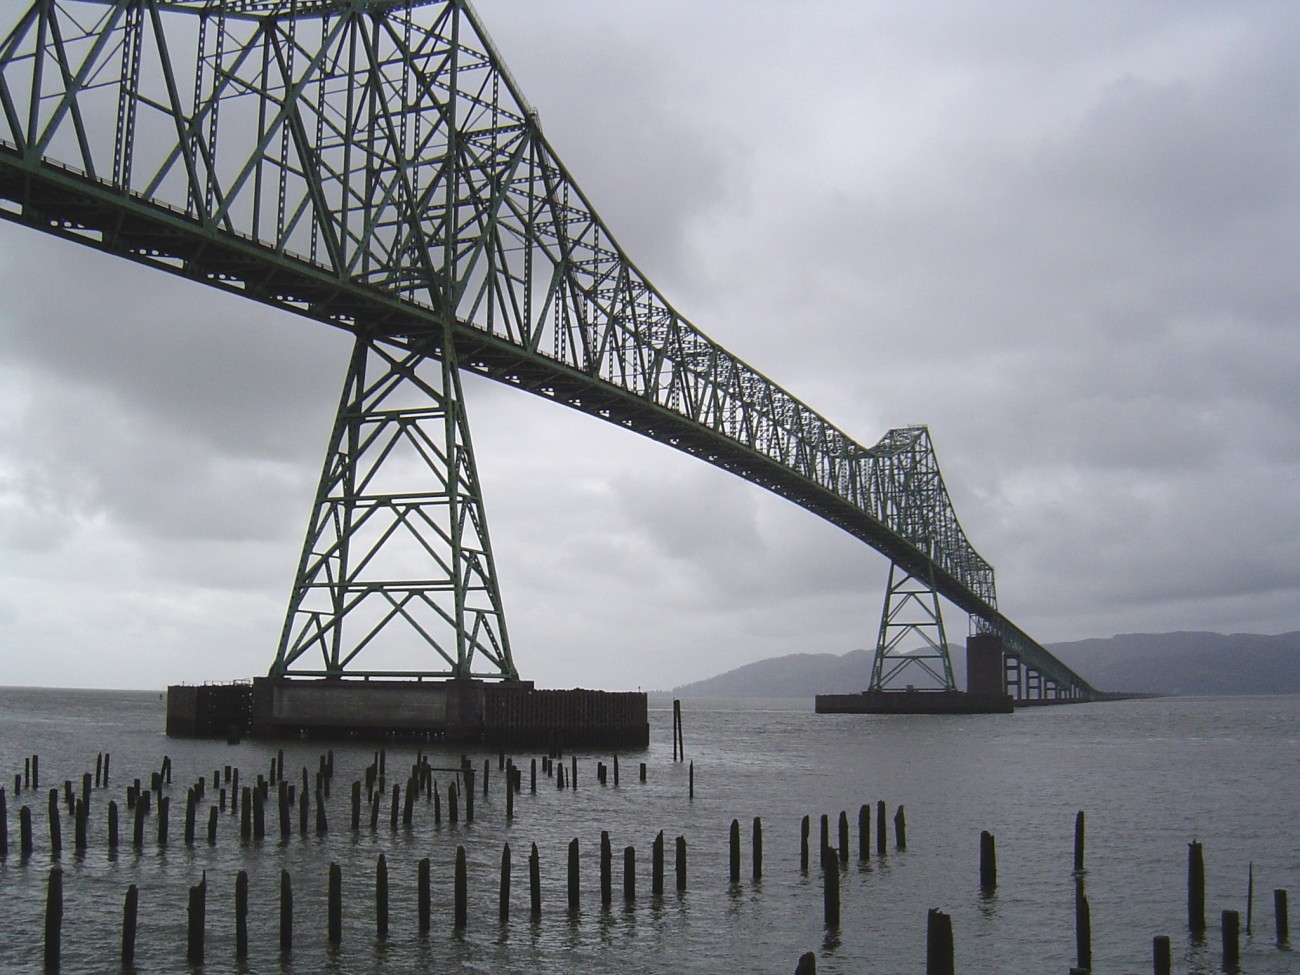 Astoria-Megler Bridge stretching from Astoria, Oregon, to Point Ellice,Washington